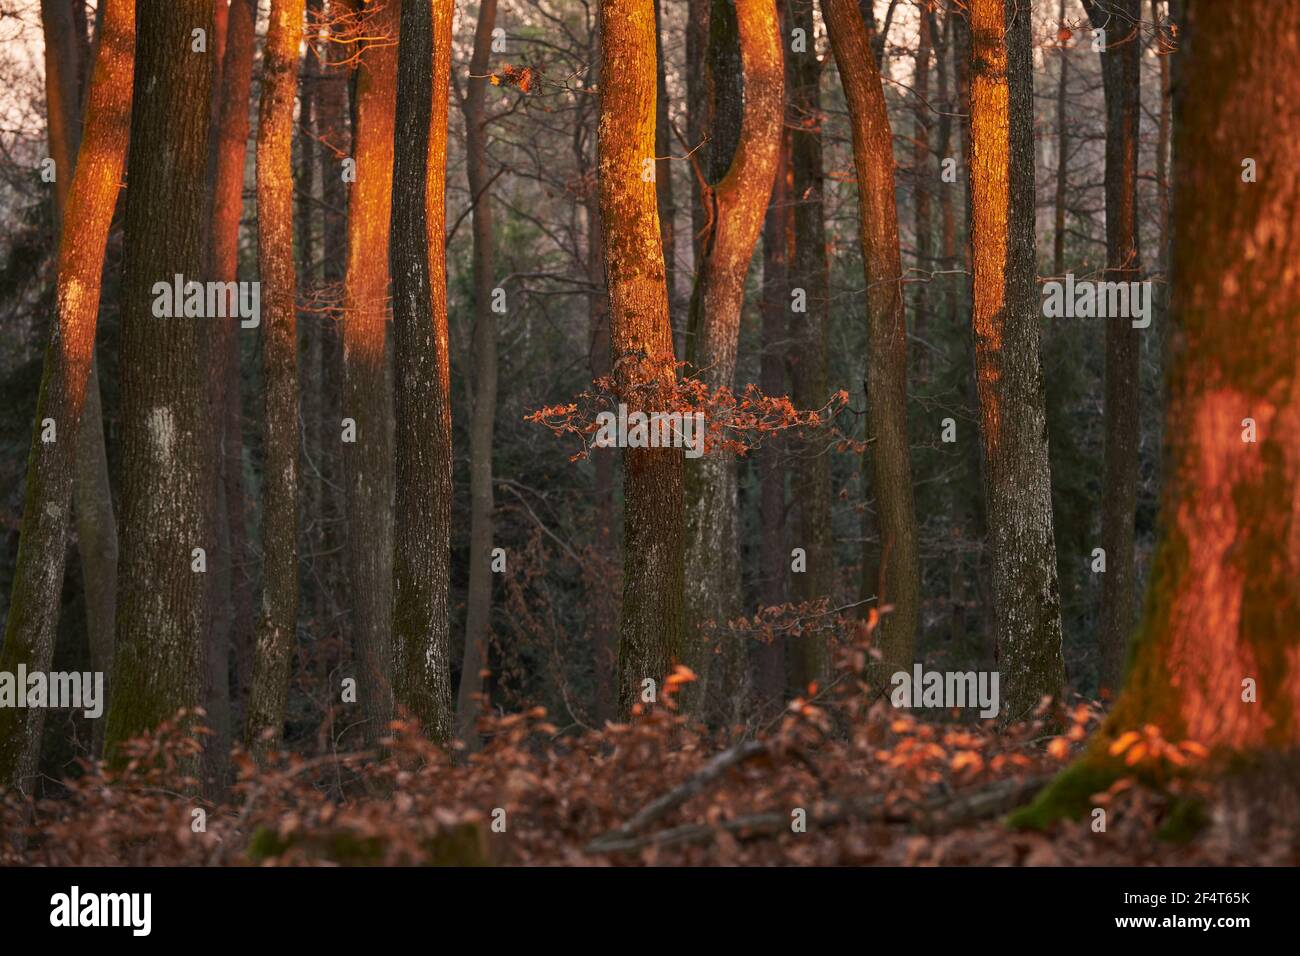 Geografia / viaggio, Austria, Bocksdorf, tramonto luce nella foresta, diritti aggiuntivi-clearance-Info-non-disponibile Foto Stock